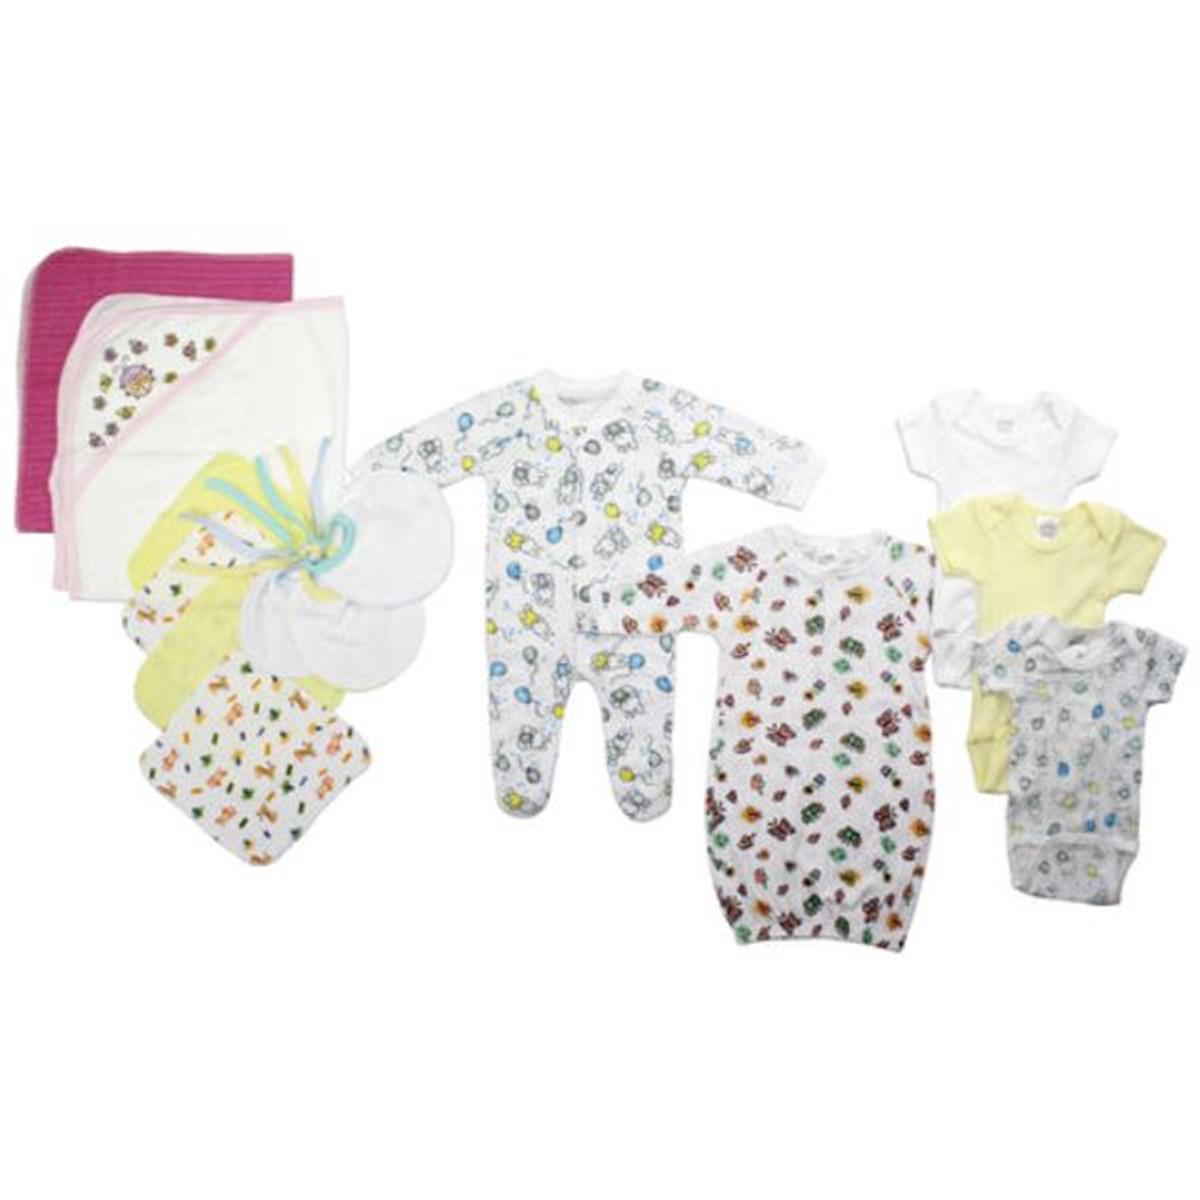 Bambini LS-0096 Newborn Baby Girls Layette Baby Shower Gift Set&#44; White & Pink - Newborn